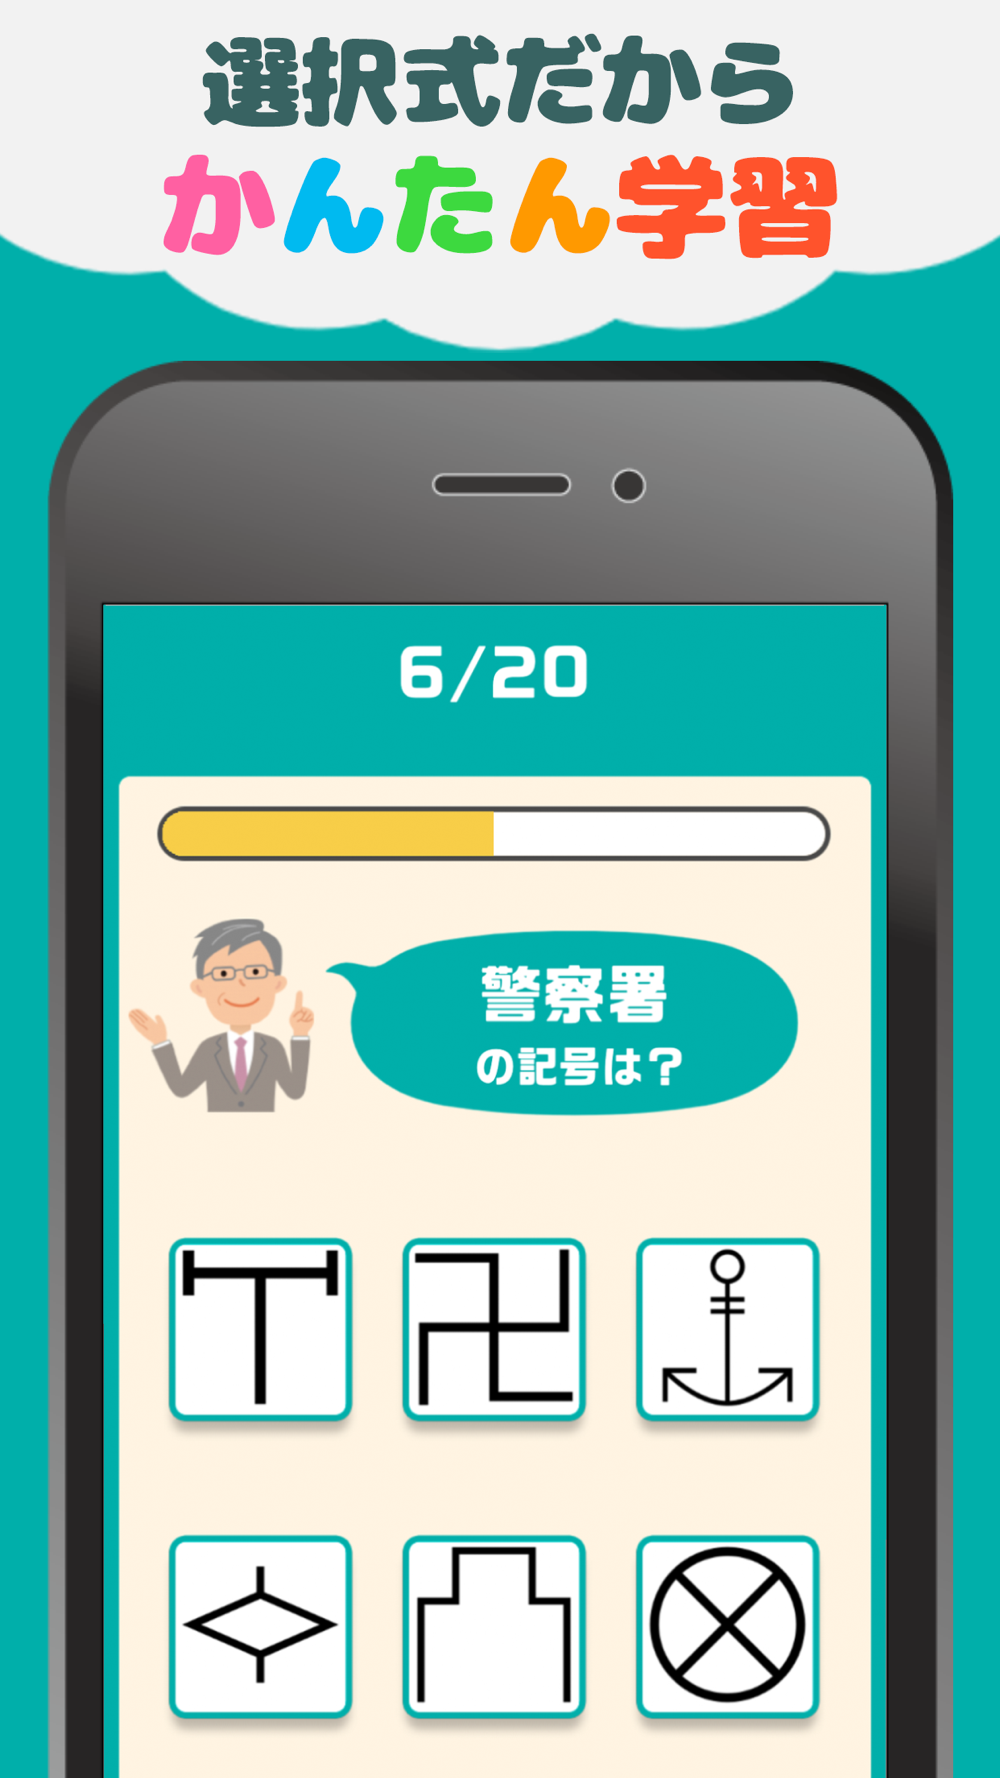 地図記号クイズ 遊びながら楽しく学習 ゲーム Free Download App For Iphone Steprimo Com